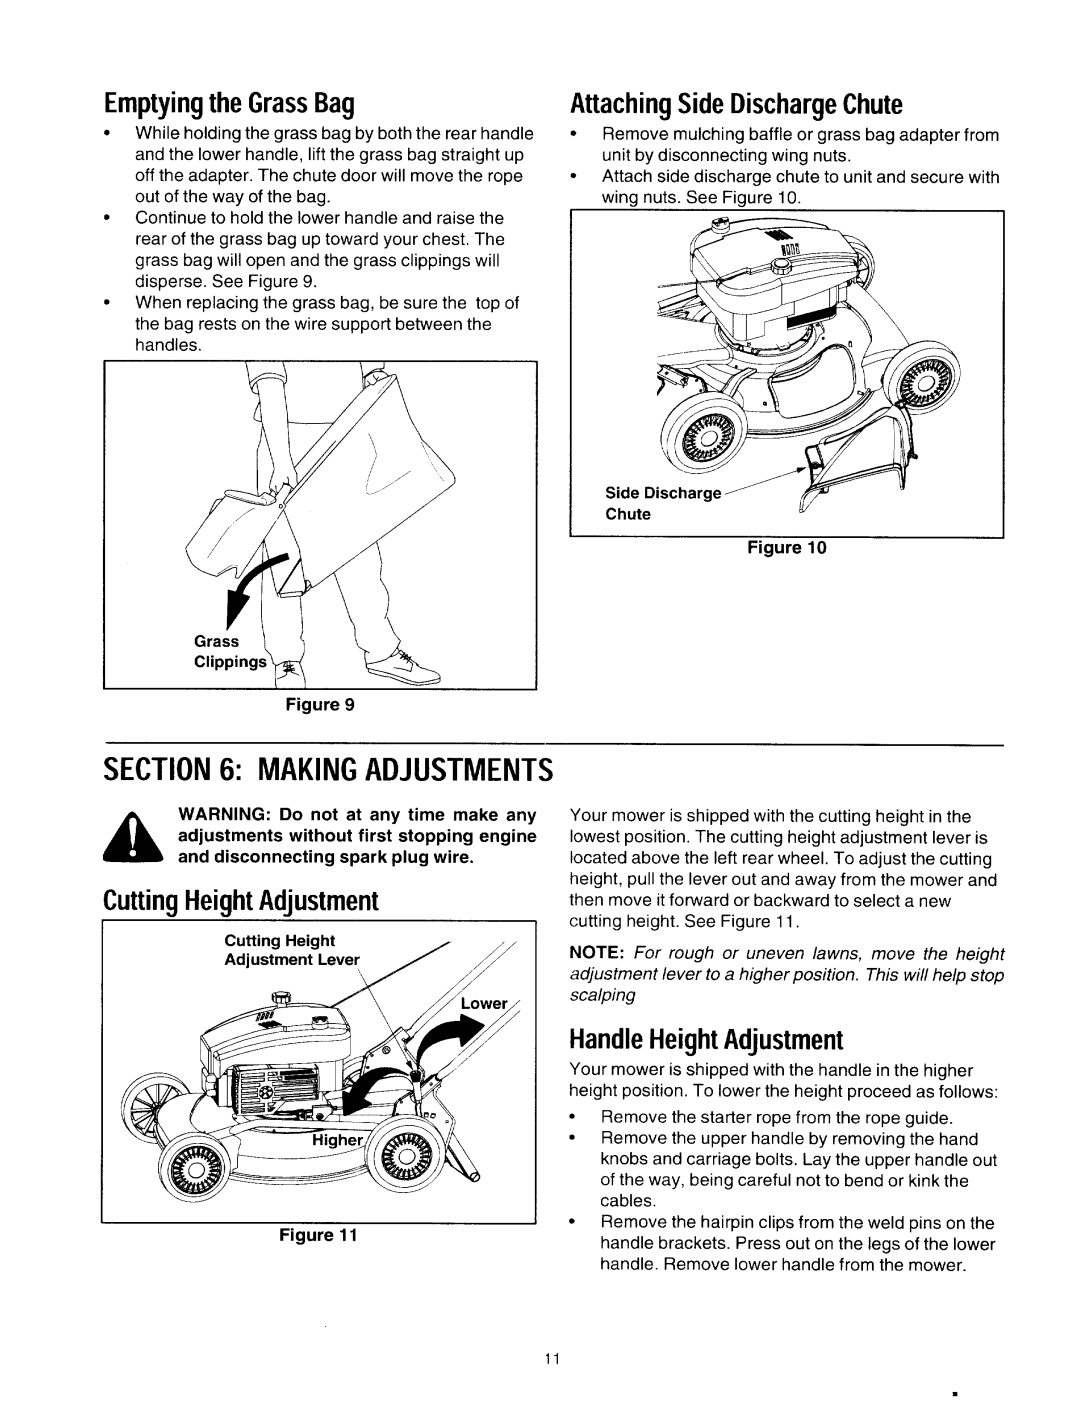 Yard-Man 12A-979L401 manual 